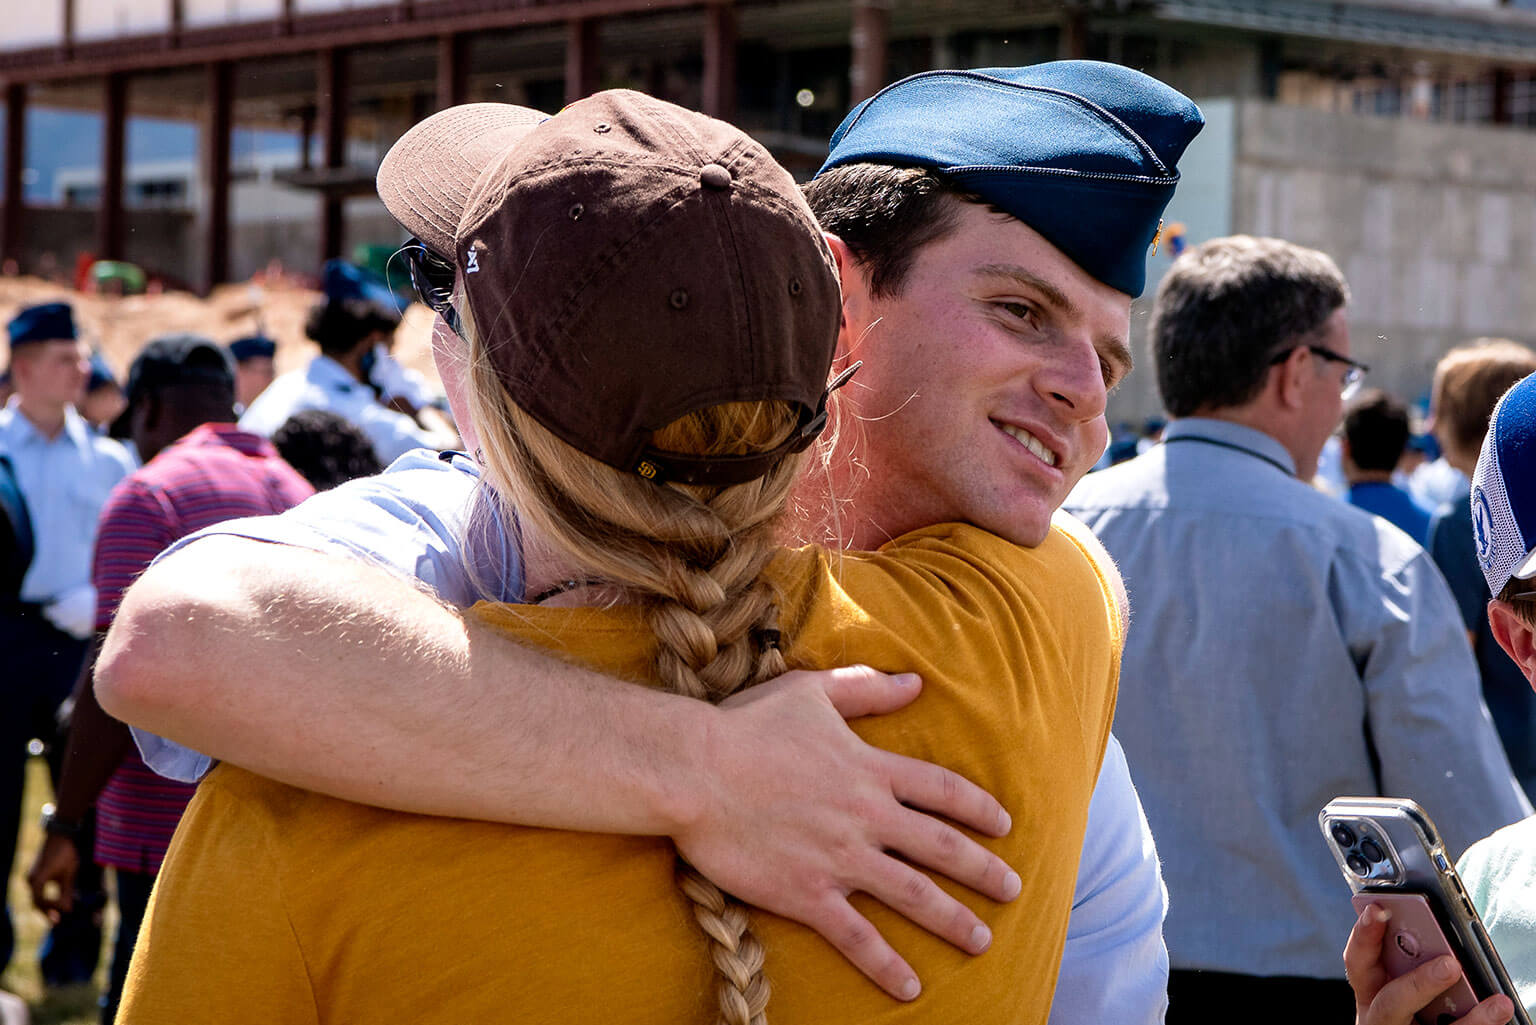 Cadet hugging sponsor.